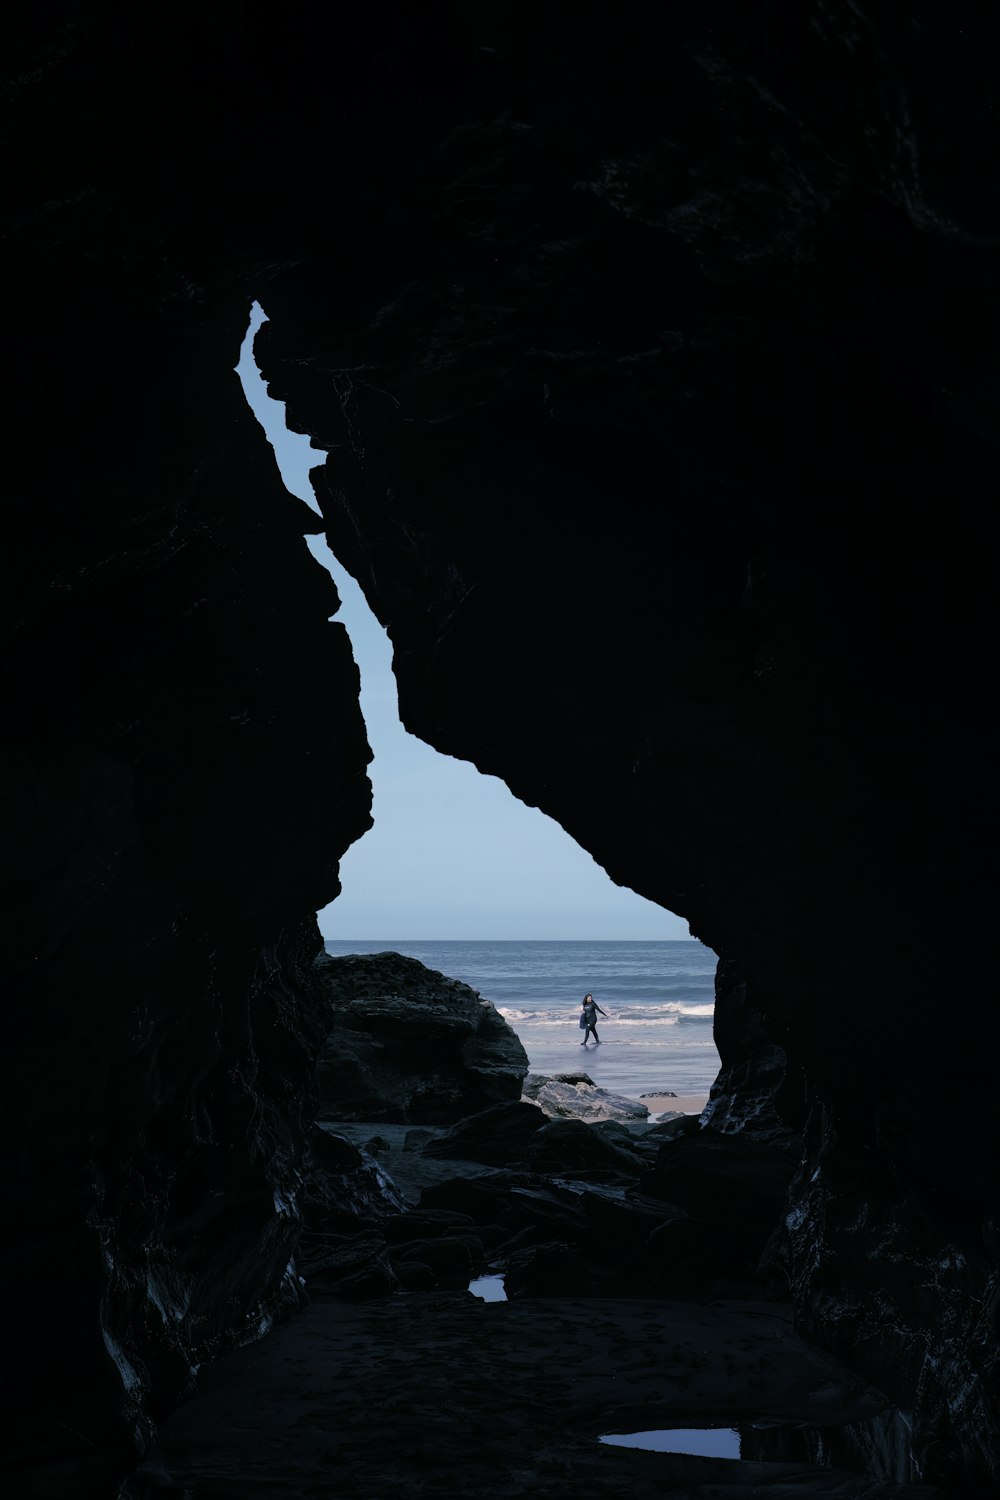 una persona parada en una cueva mirando hacia el océano